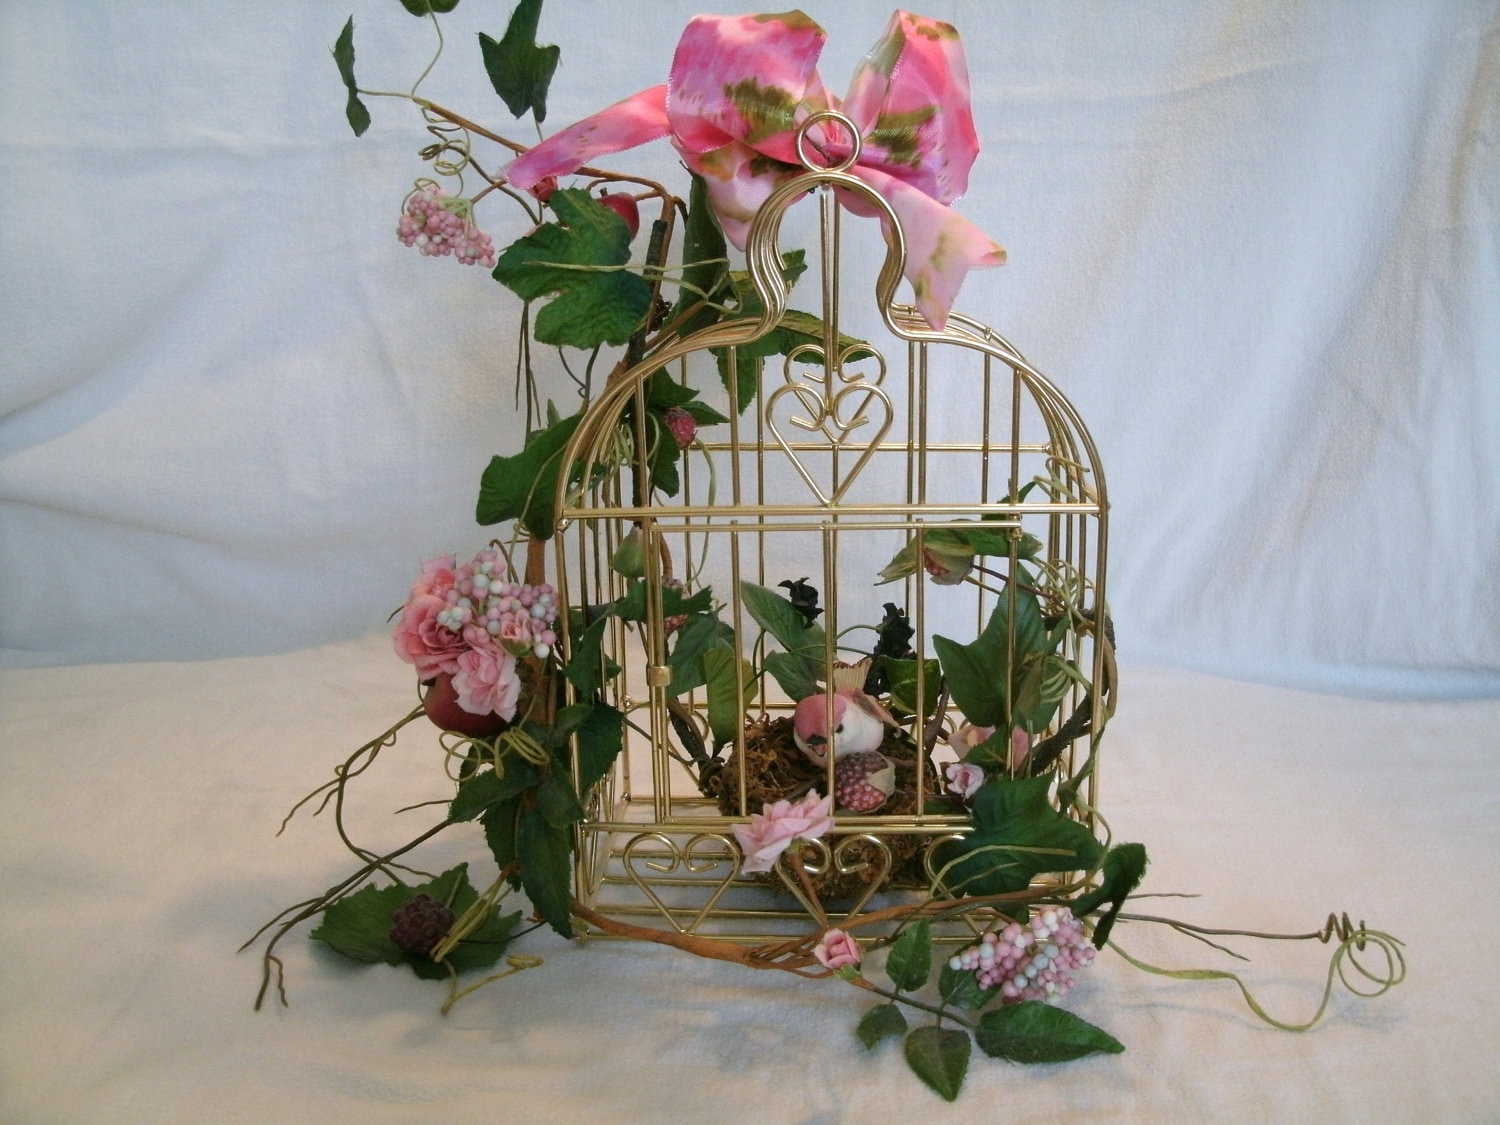 Birdcage Floral Arrangements